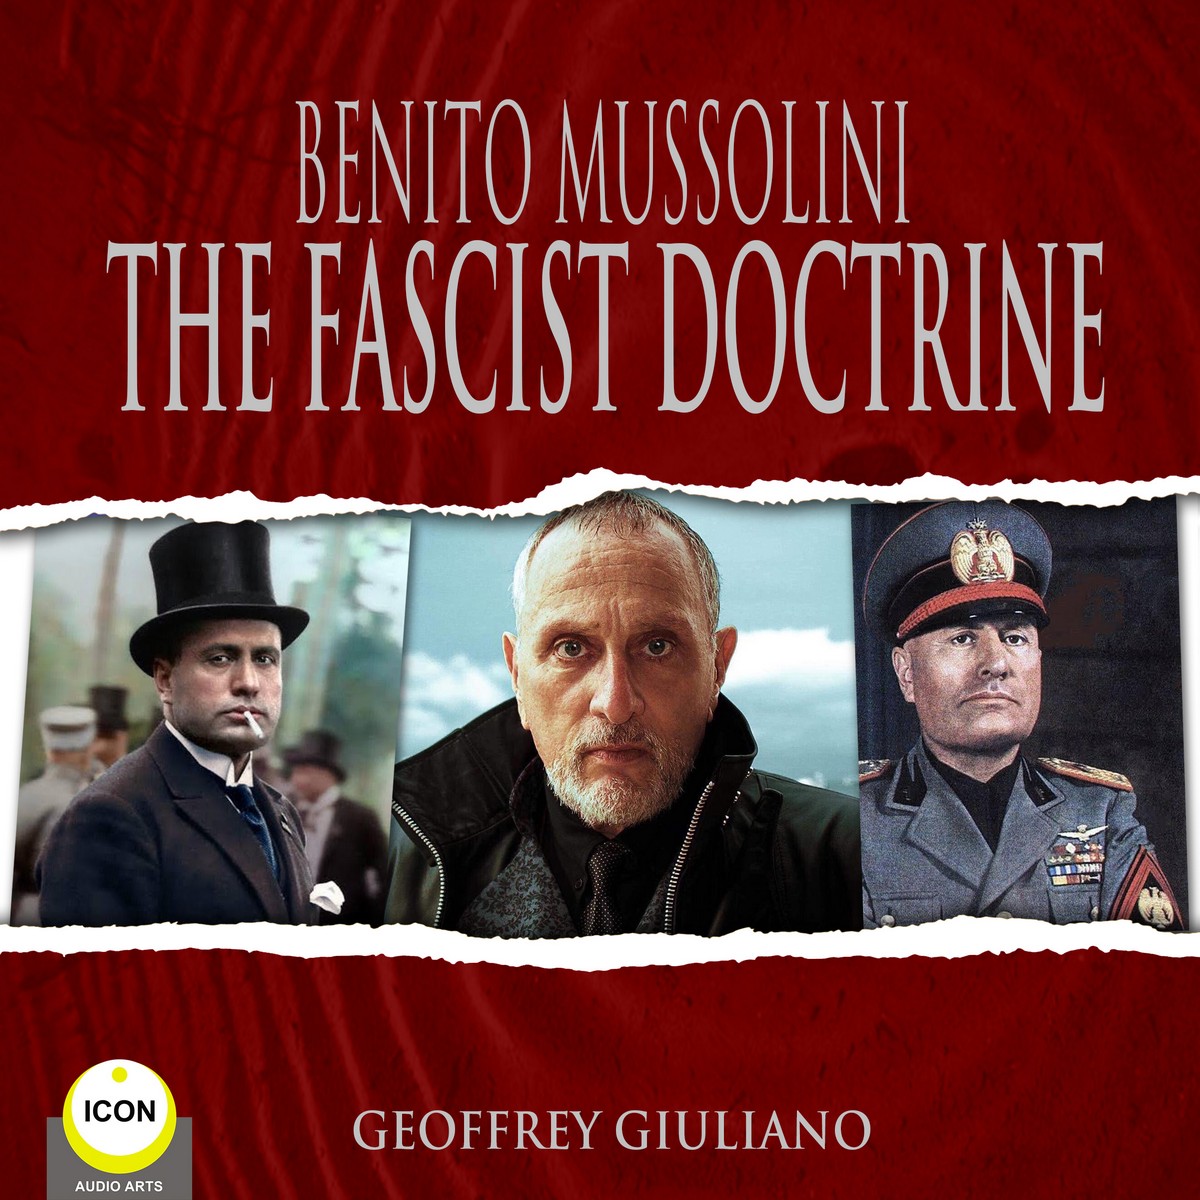 Benito Mussolini The Fascist Doctrine